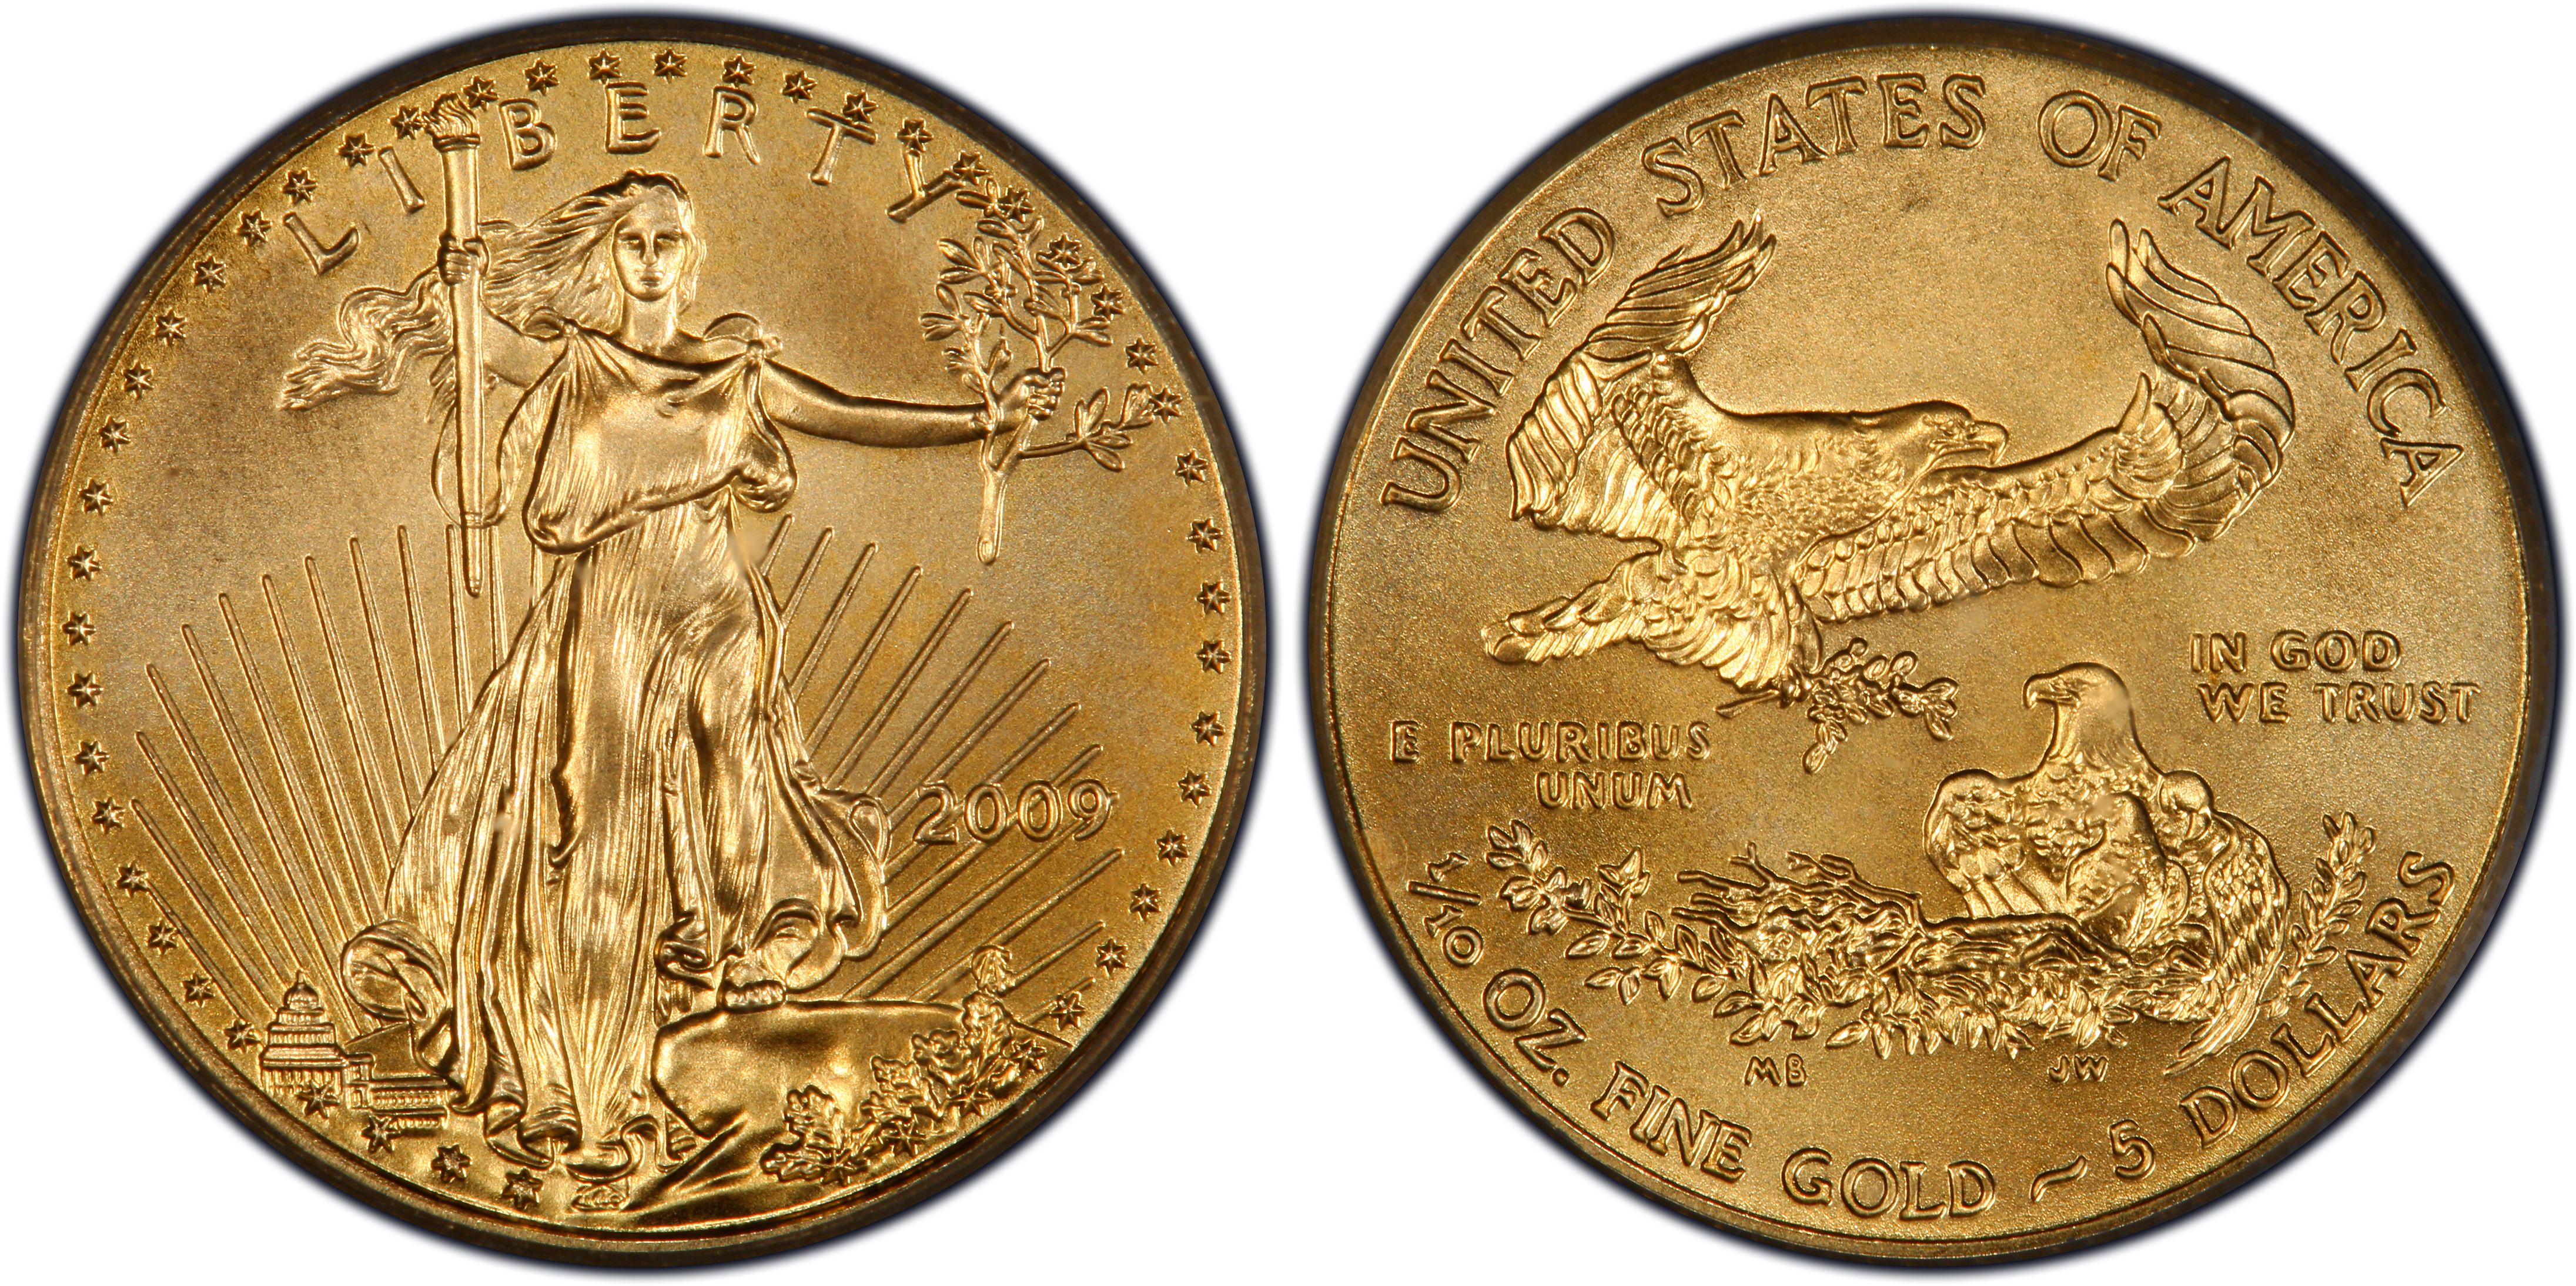 BU 2009 American Gold Eagle 1/10 oz $5 